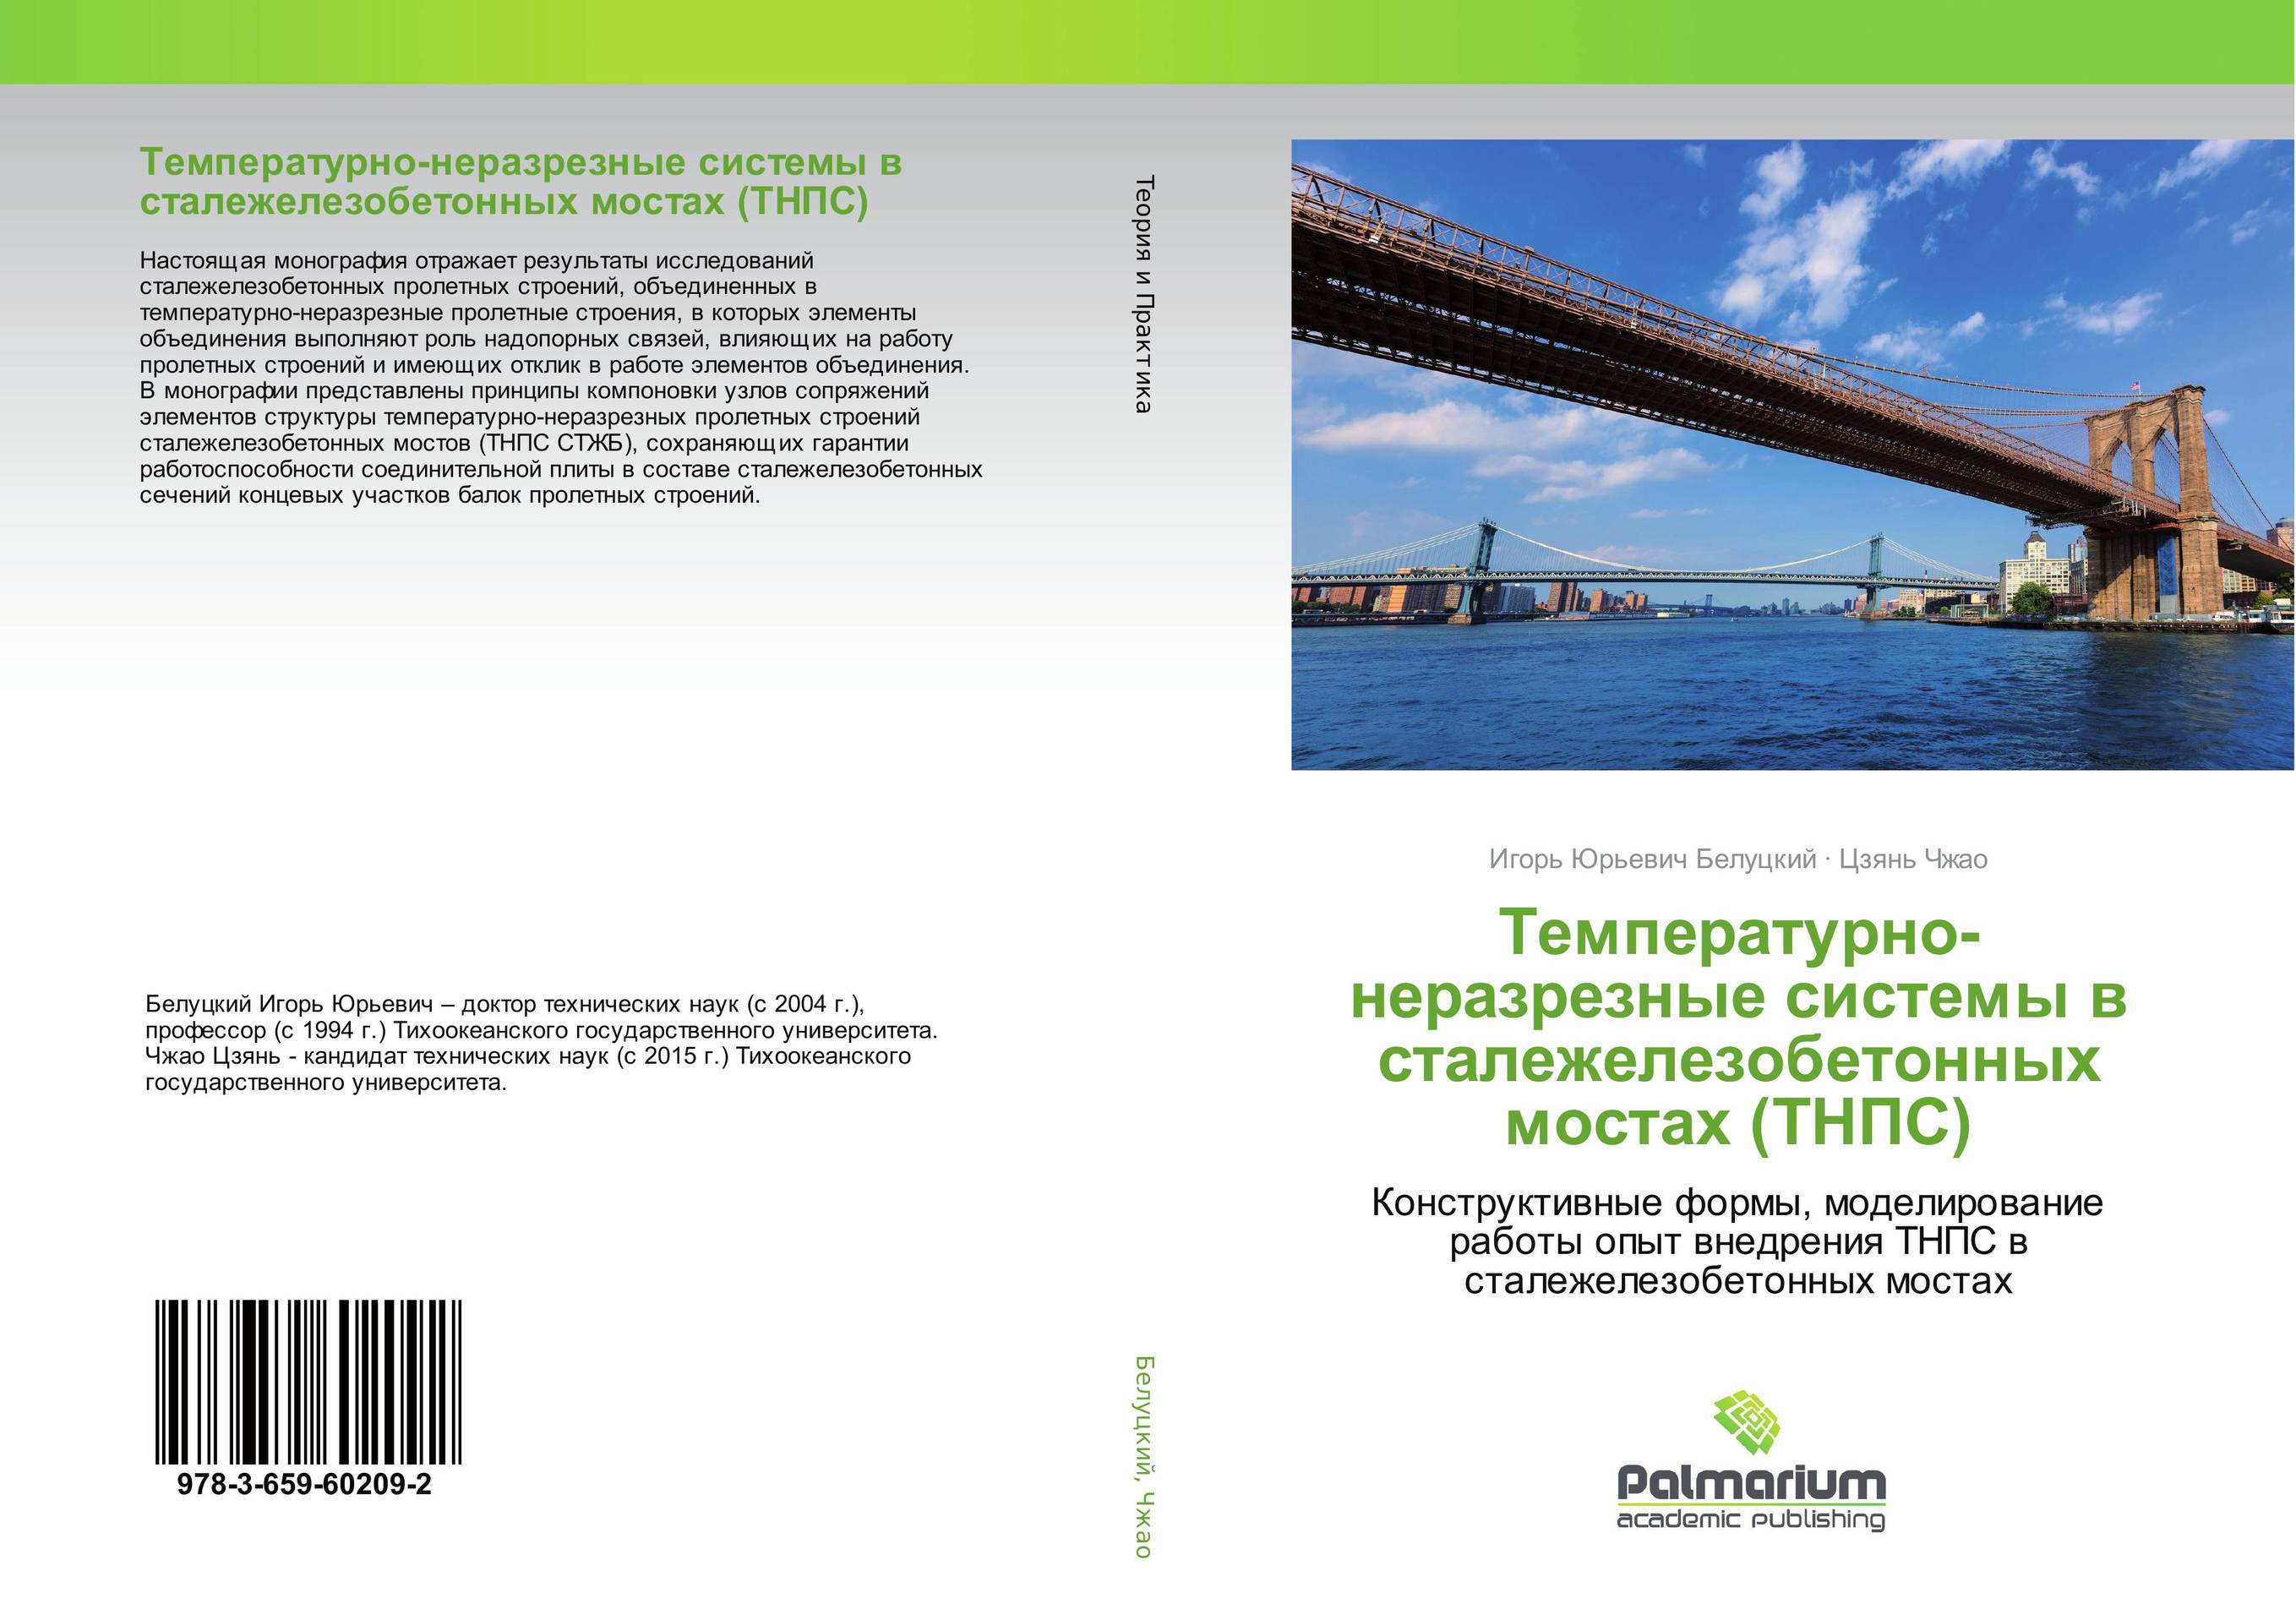 
        Температурно-неразрезные системы в сталежелезобетонных мостах (ТНПС). Конструктивные формы, моделирование работы опыт внедрения ТНПС в сталежелезобетонных мостах.
      